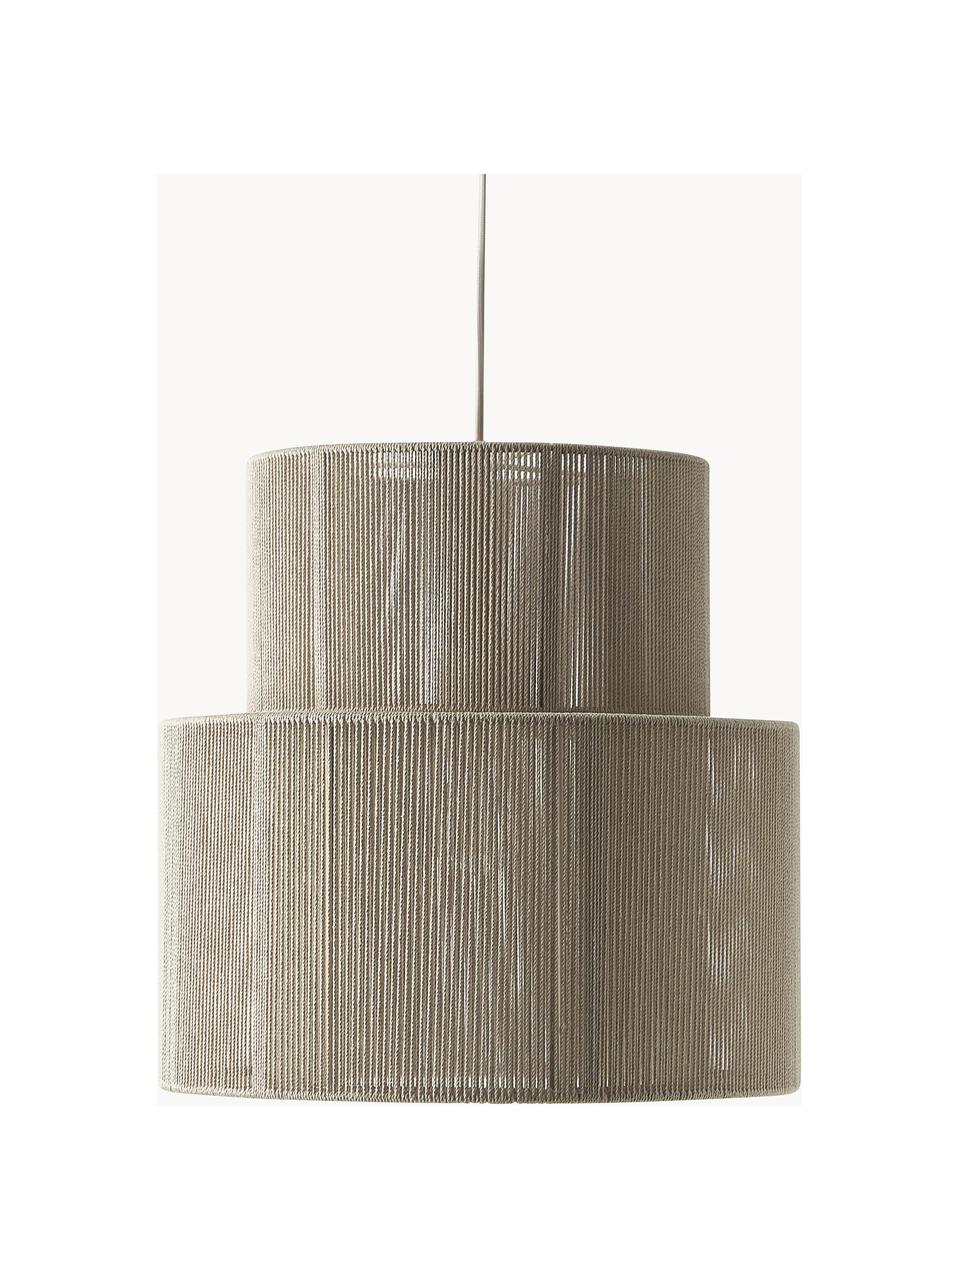 Hanglamp Lace van linnen draden, Lampenkap: touw, metaal, Beige, Ø 40 x H 40 cm